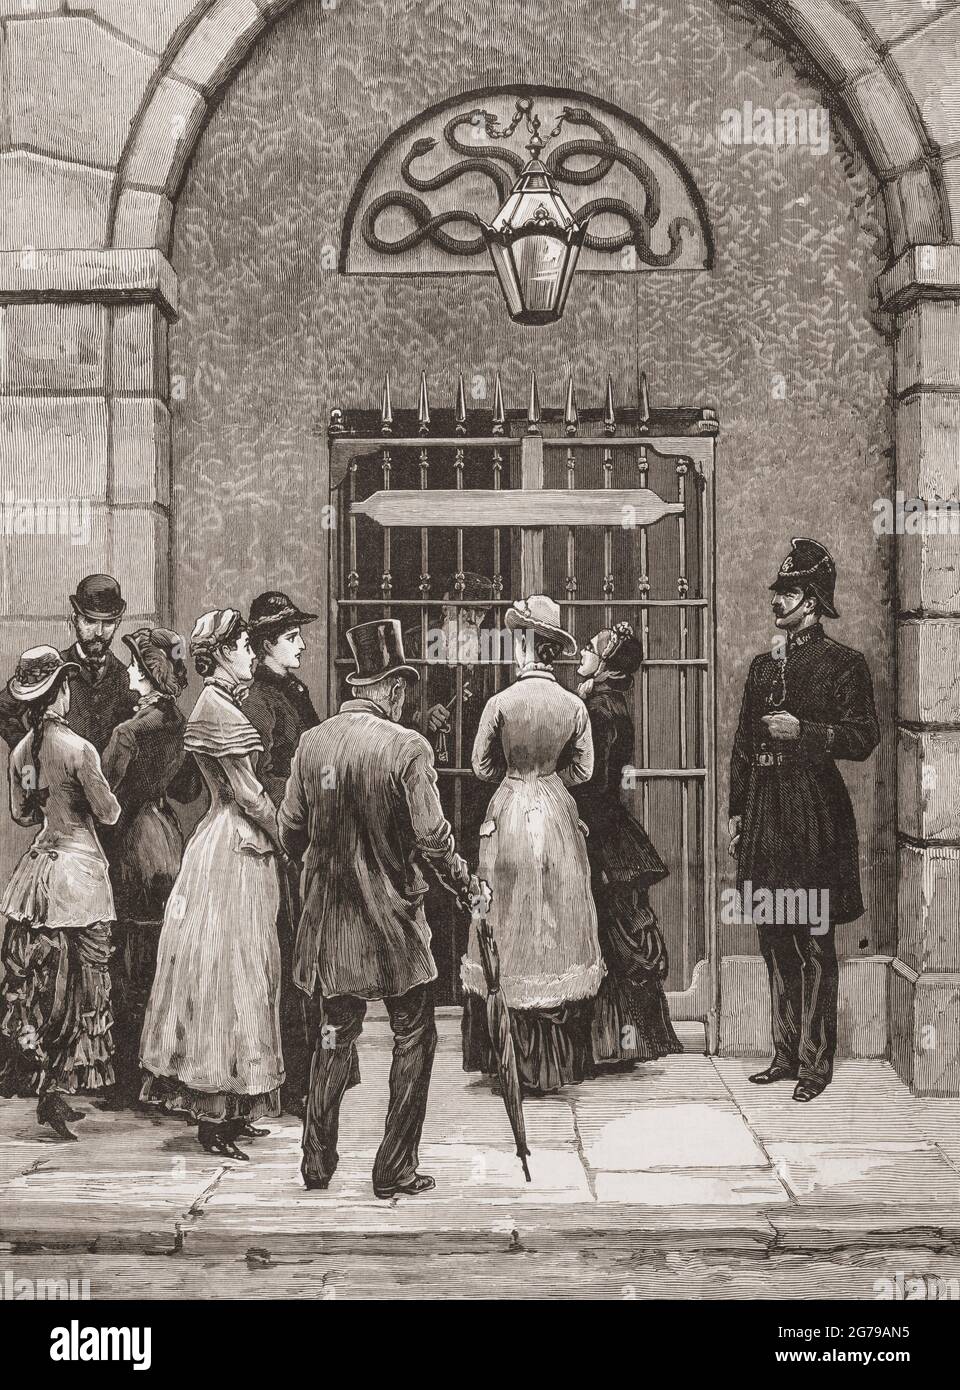 Prison de Kilmainham, Dublin, République d'Irlande. Les familles irlandaises attendent à la porte principale pour entrer et visiter les prisonniers. De la London Illustrated News, 5 novembre 1881. Banque D'Images